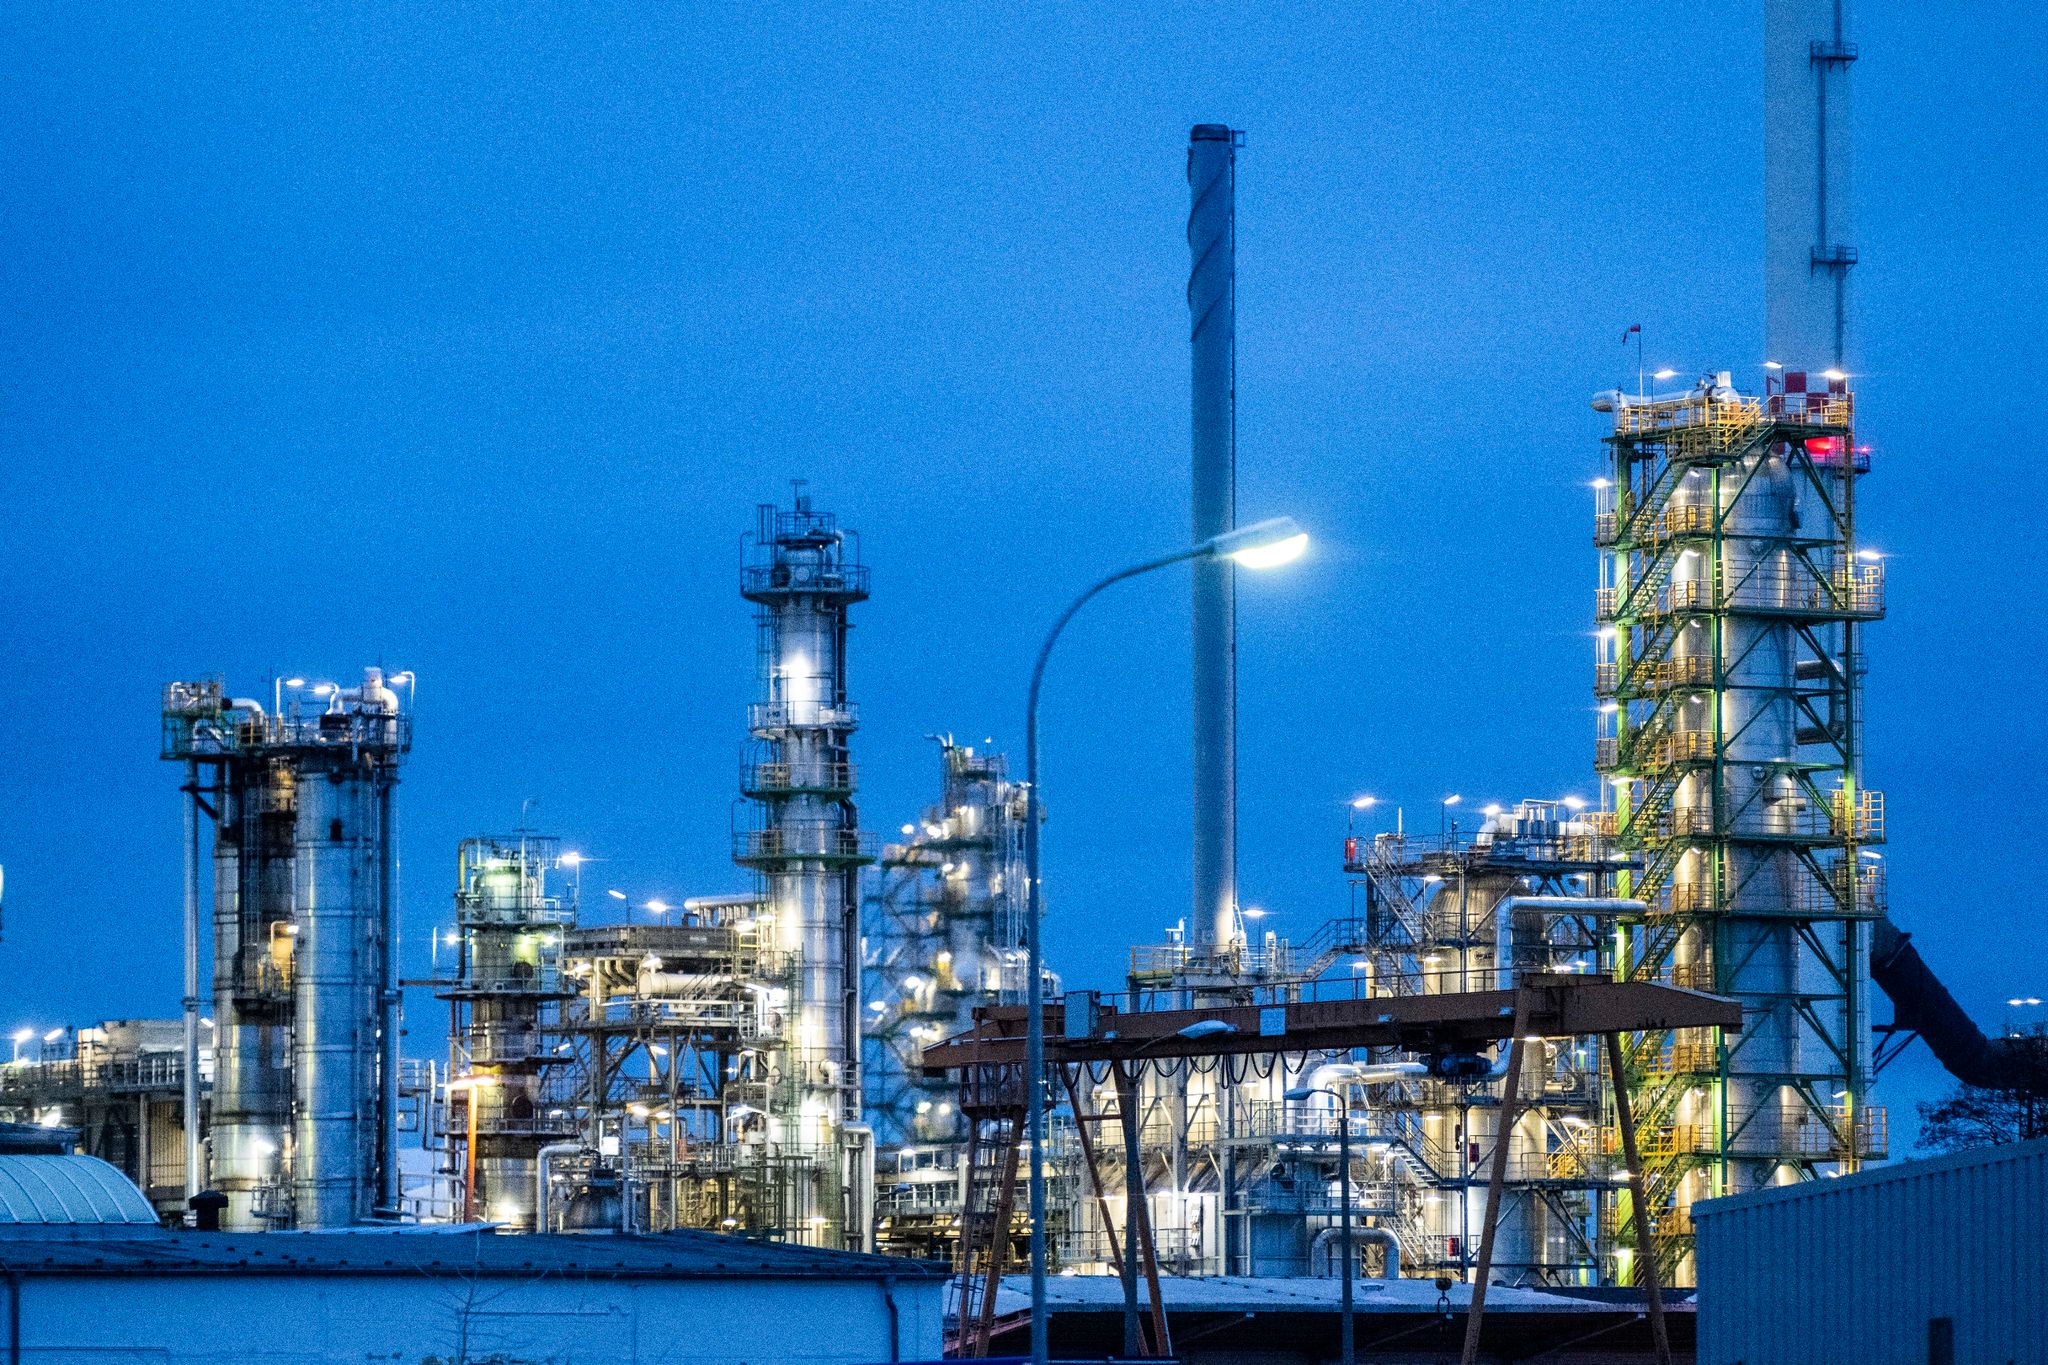 Die Anlagen der Erdölraffinerie auf dem Industriegelände der PCK-Raffinerie GmbH in Schwedt.